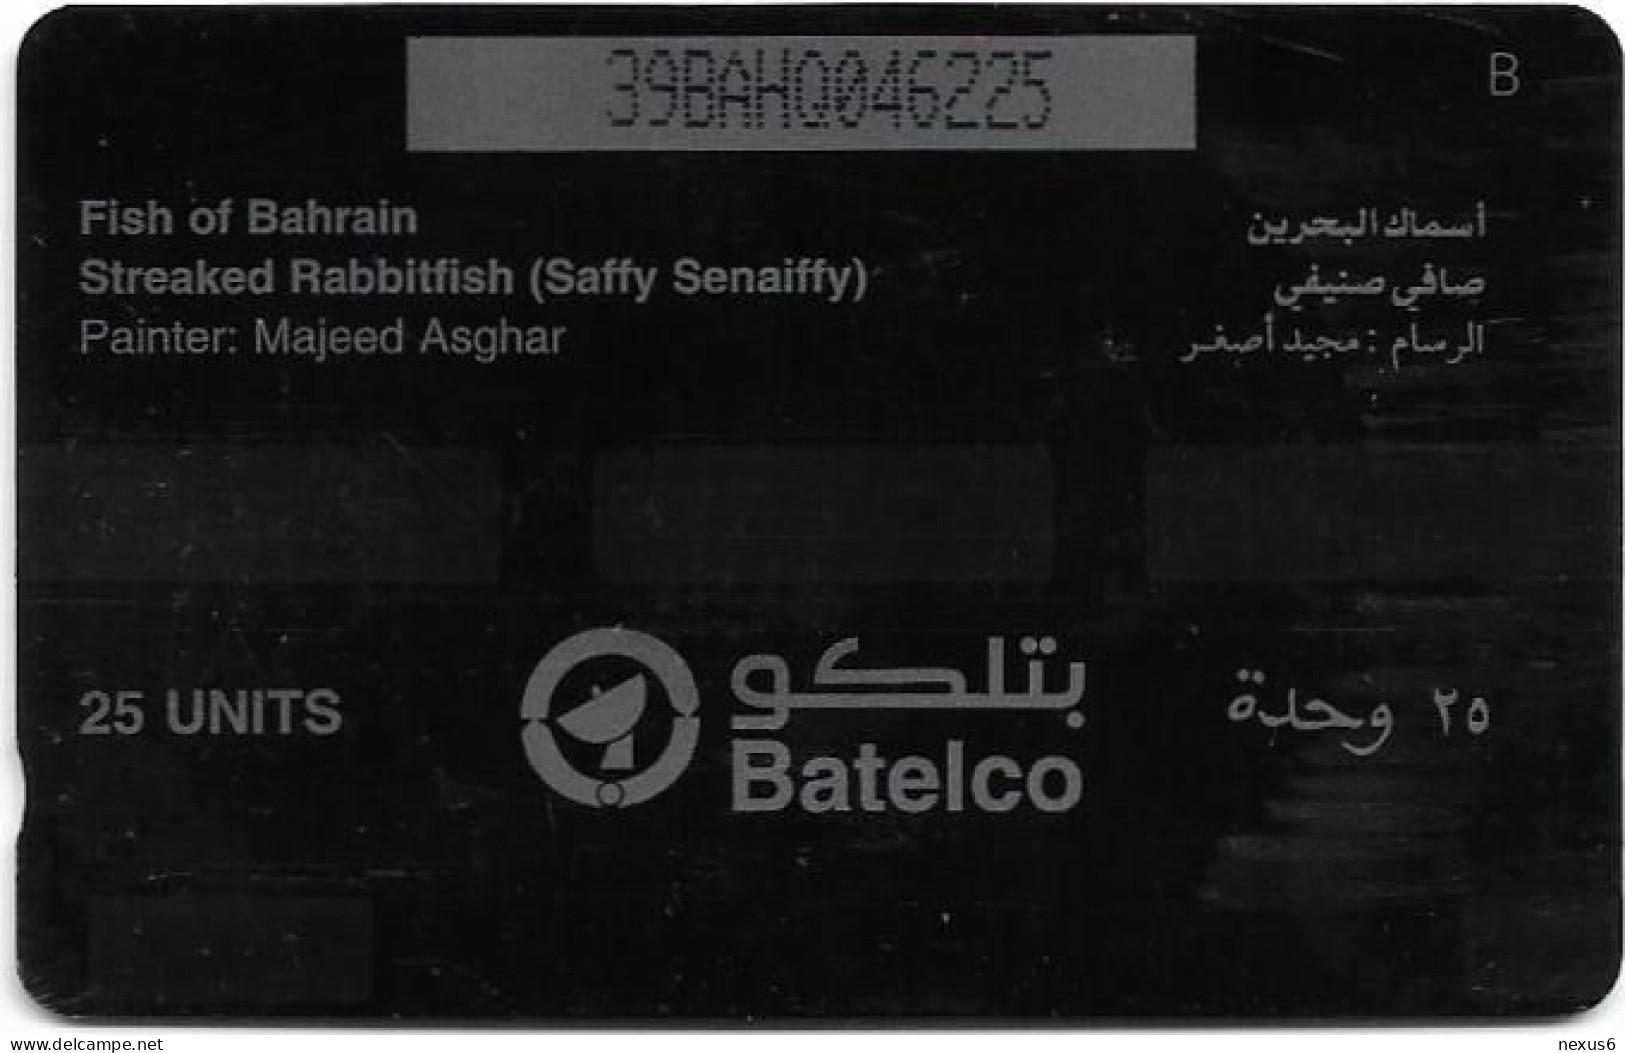 Bahrain - Batelco (GPT) - Fish Of Bahrain - Streaked Rabbitfish - 39BAHQ (Dashed Ø), 1996, 25Units, Used - Baharain